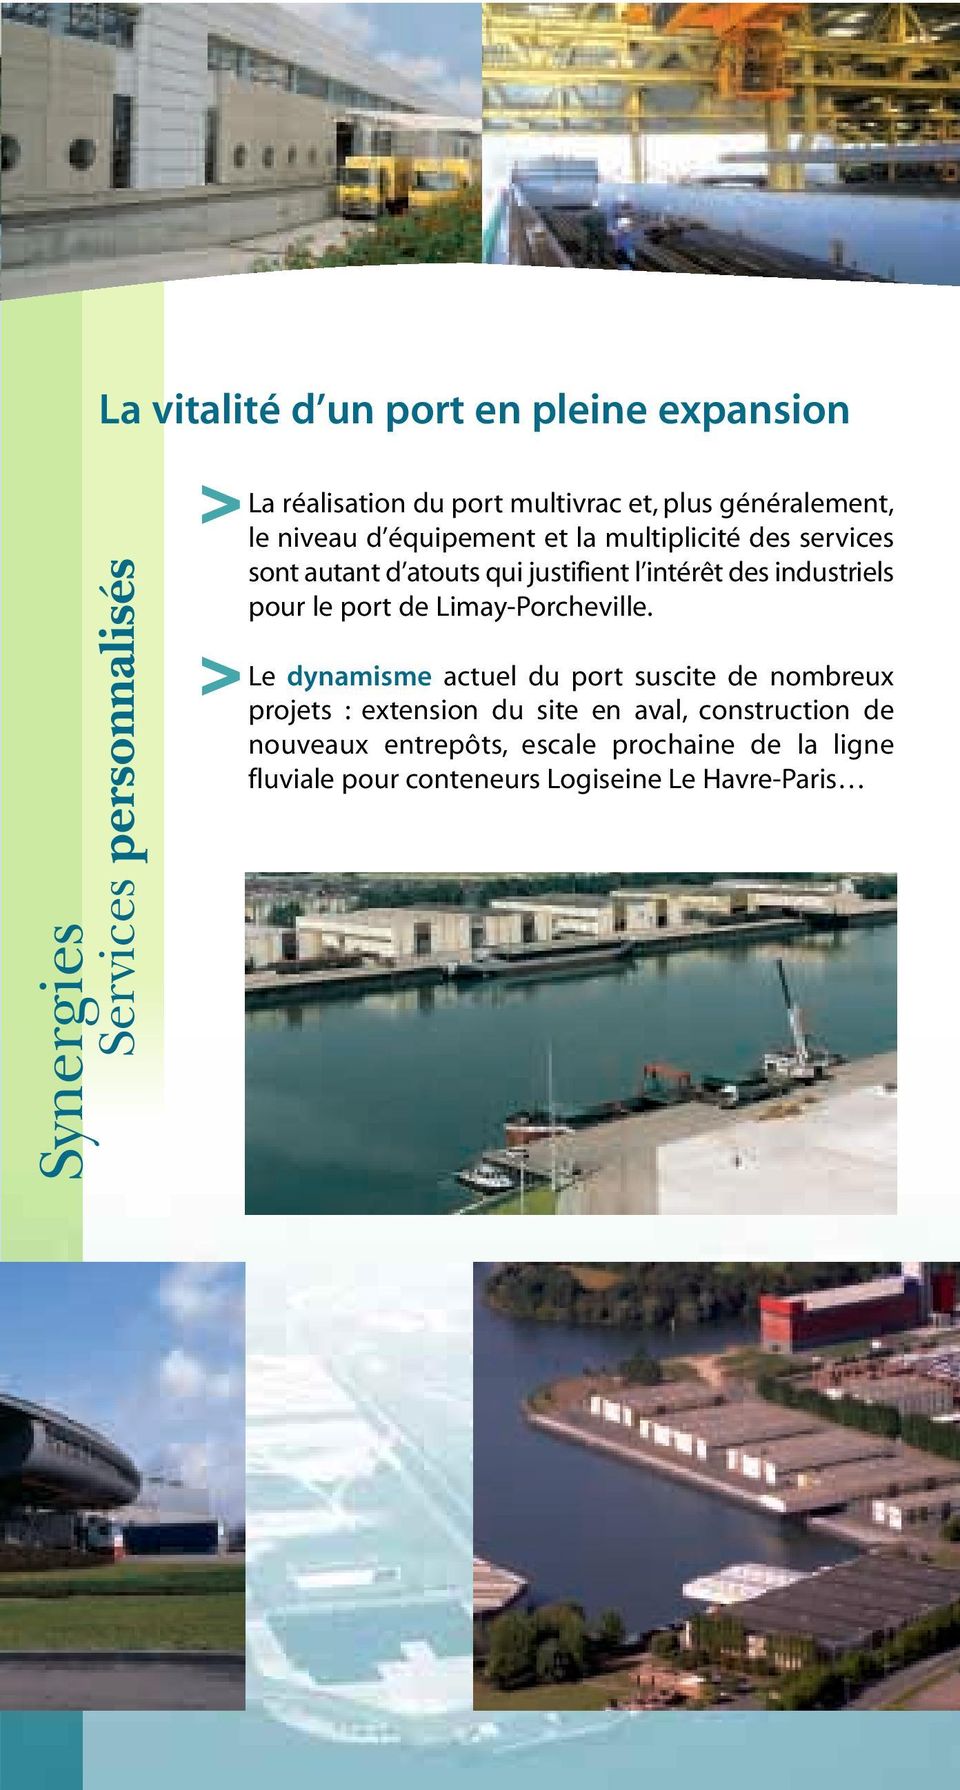 industriels pour le port de Limay-Porcheville.